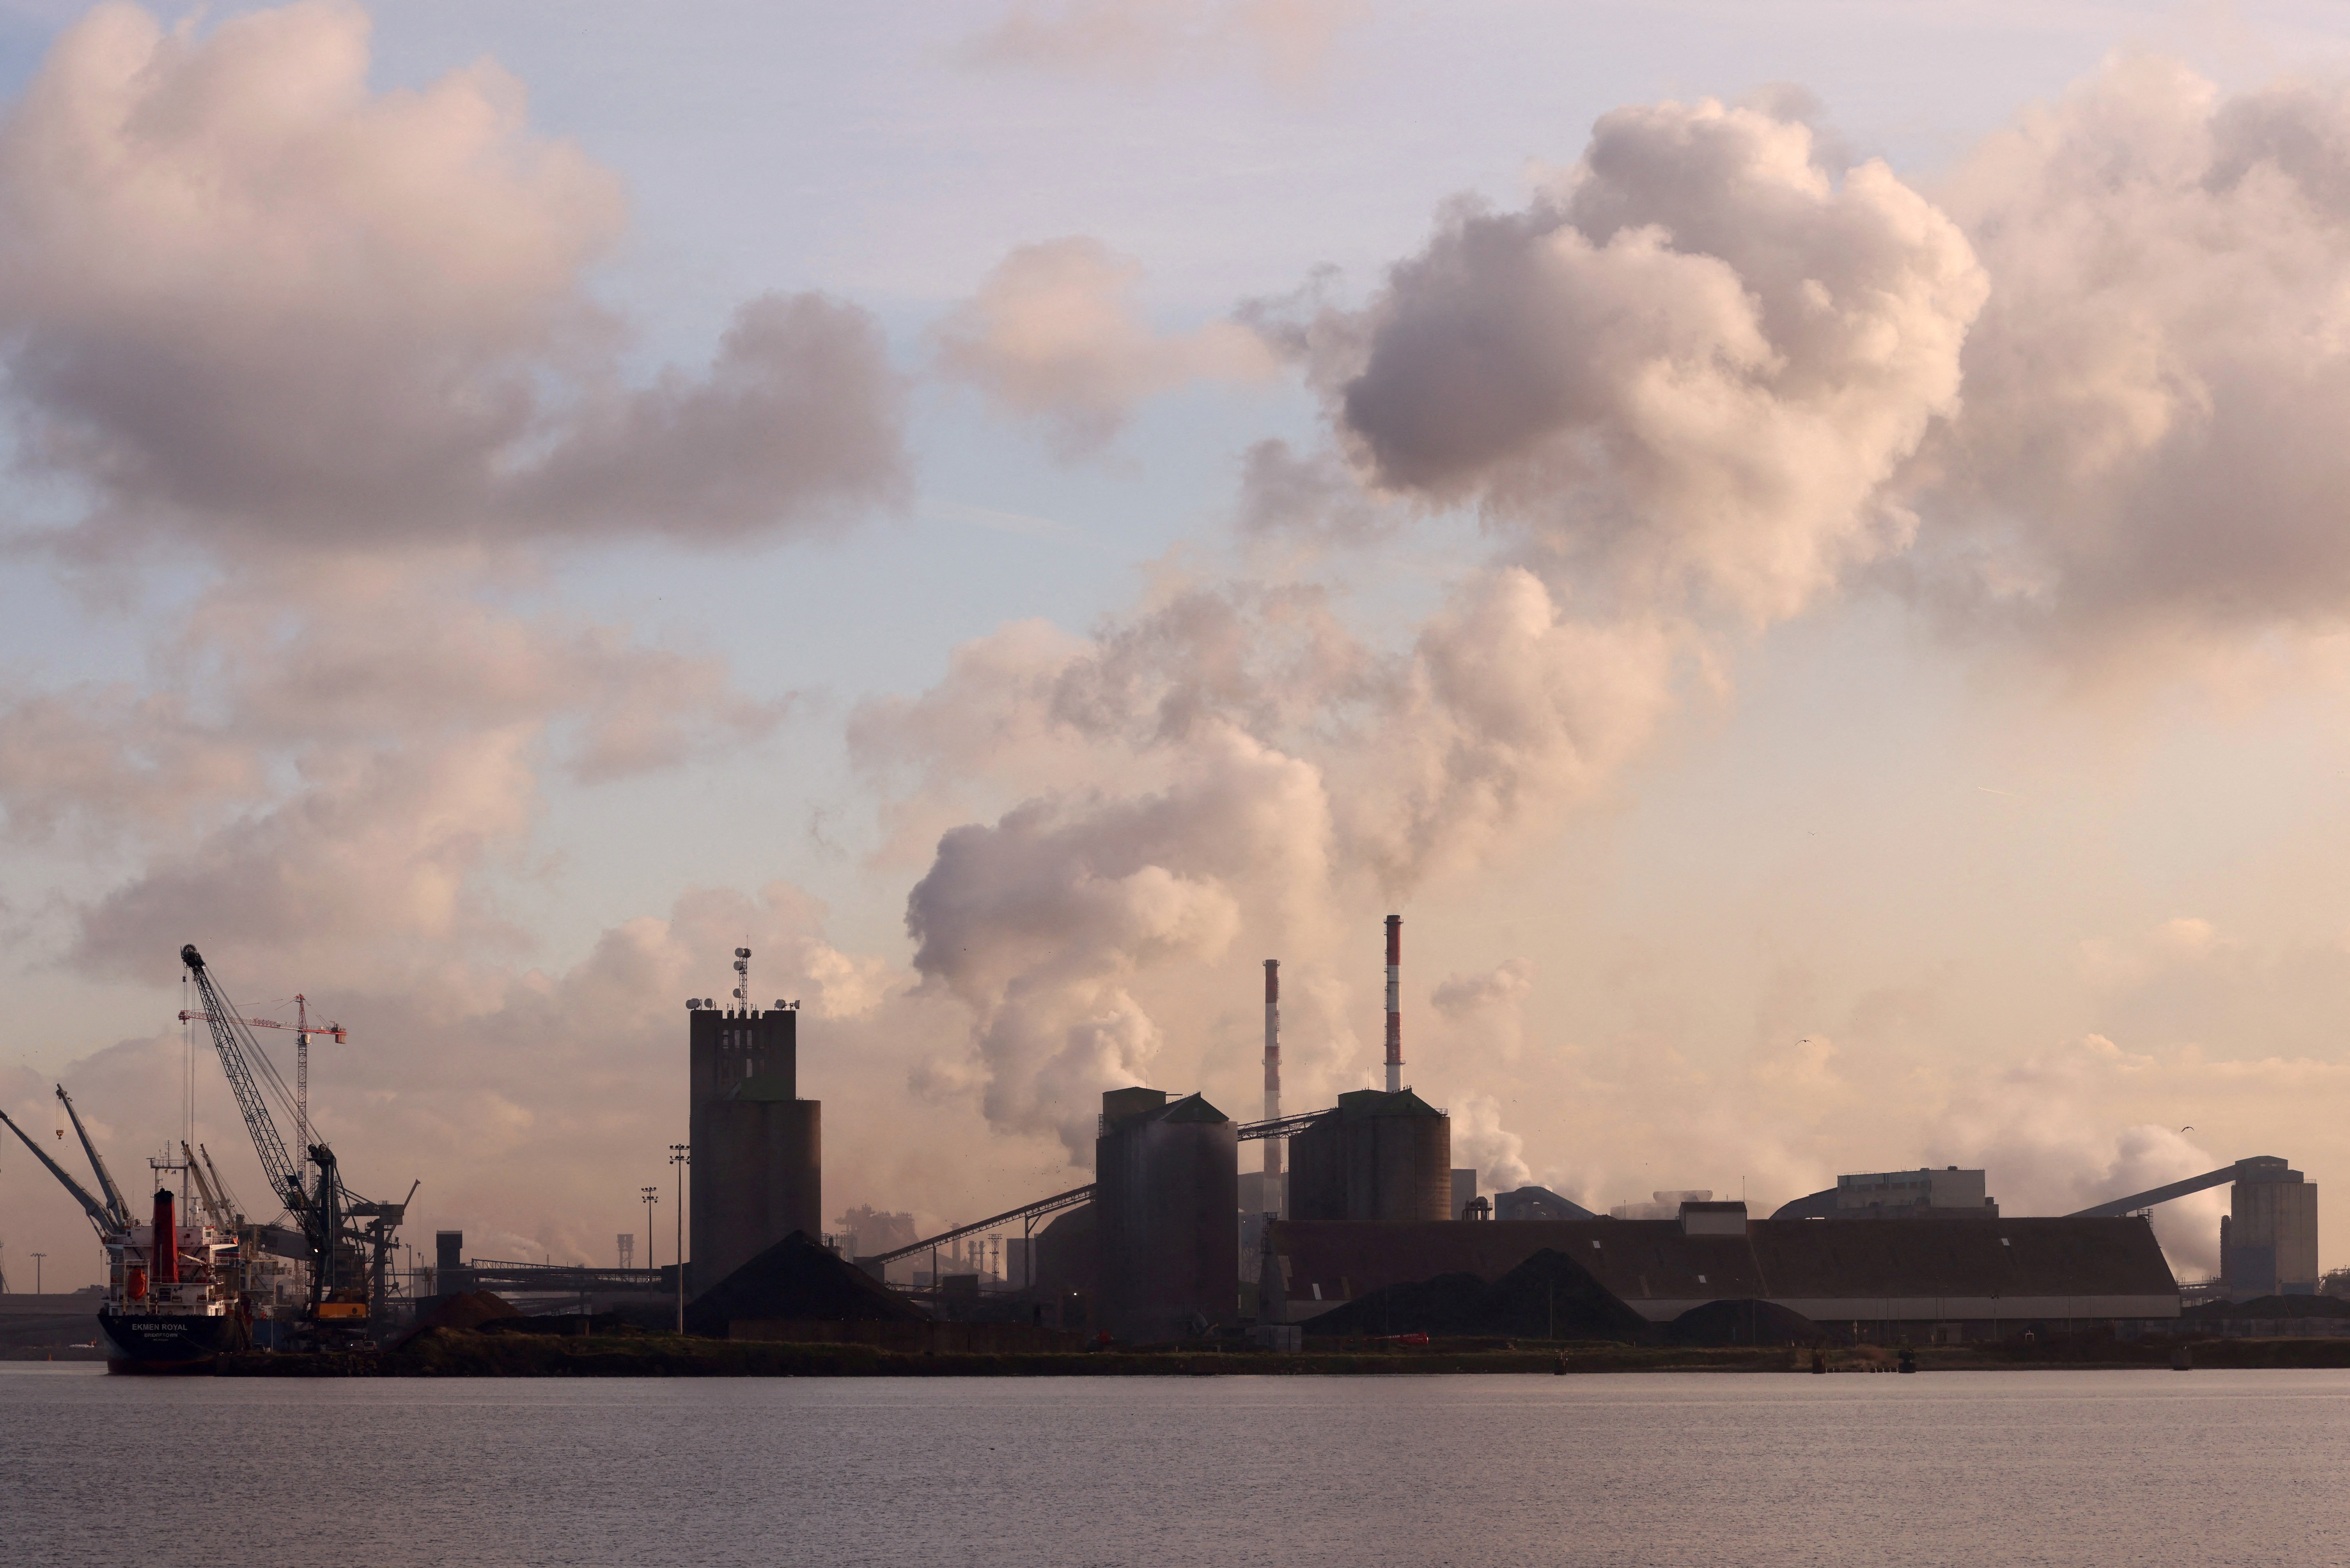 Climat : pour stocker le CO2 de ses usines, la France tisse sa toile en Europe